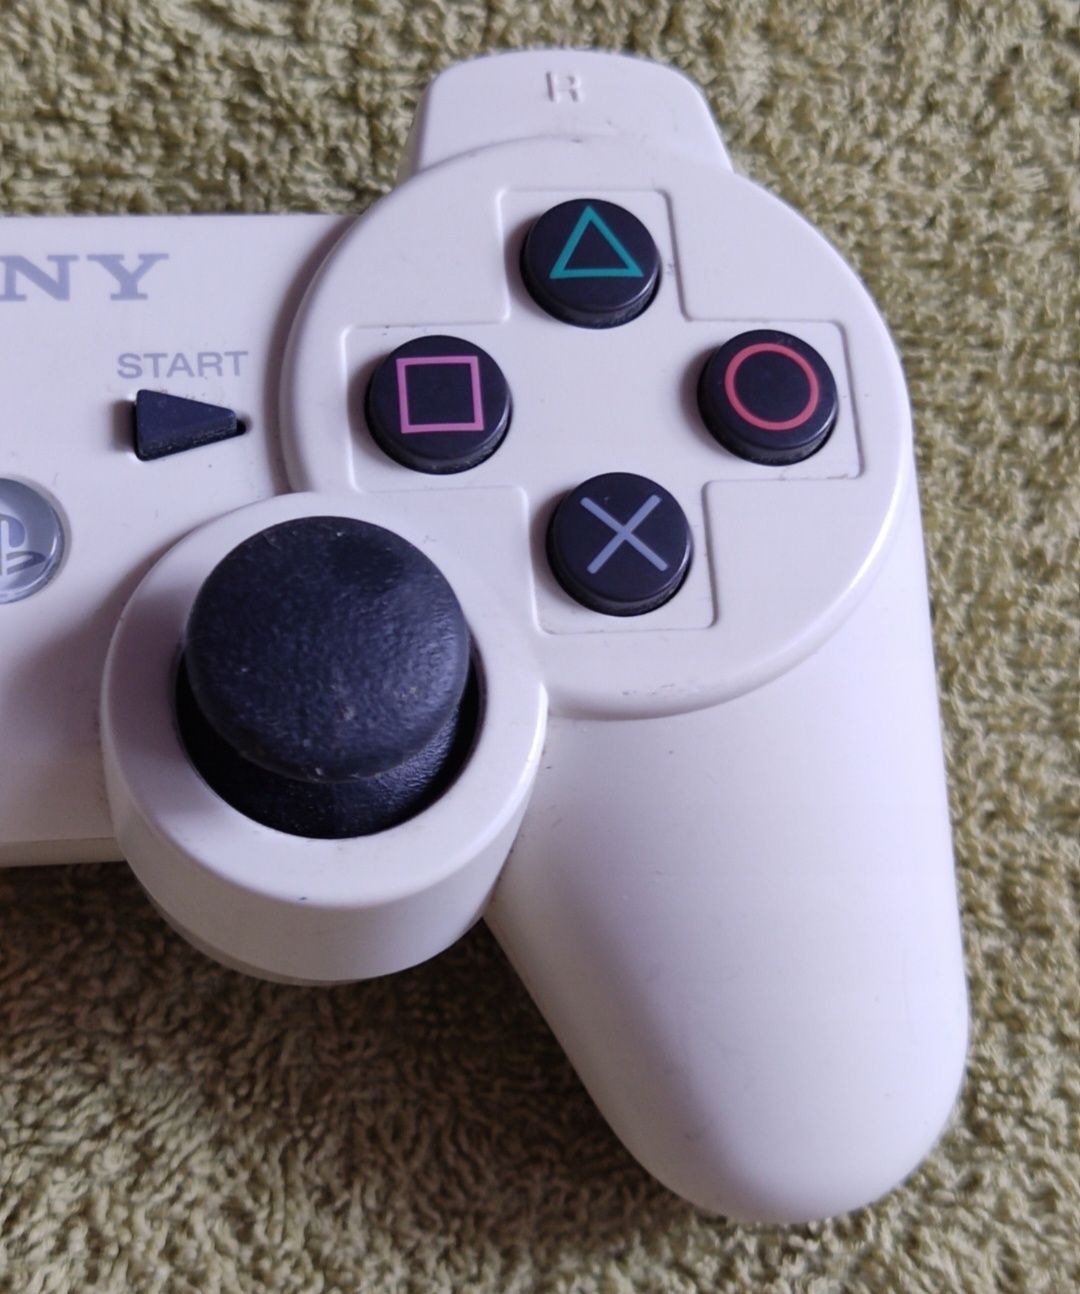 Oryginalny pad Sixaxis Sony PlayStation 3 japoński